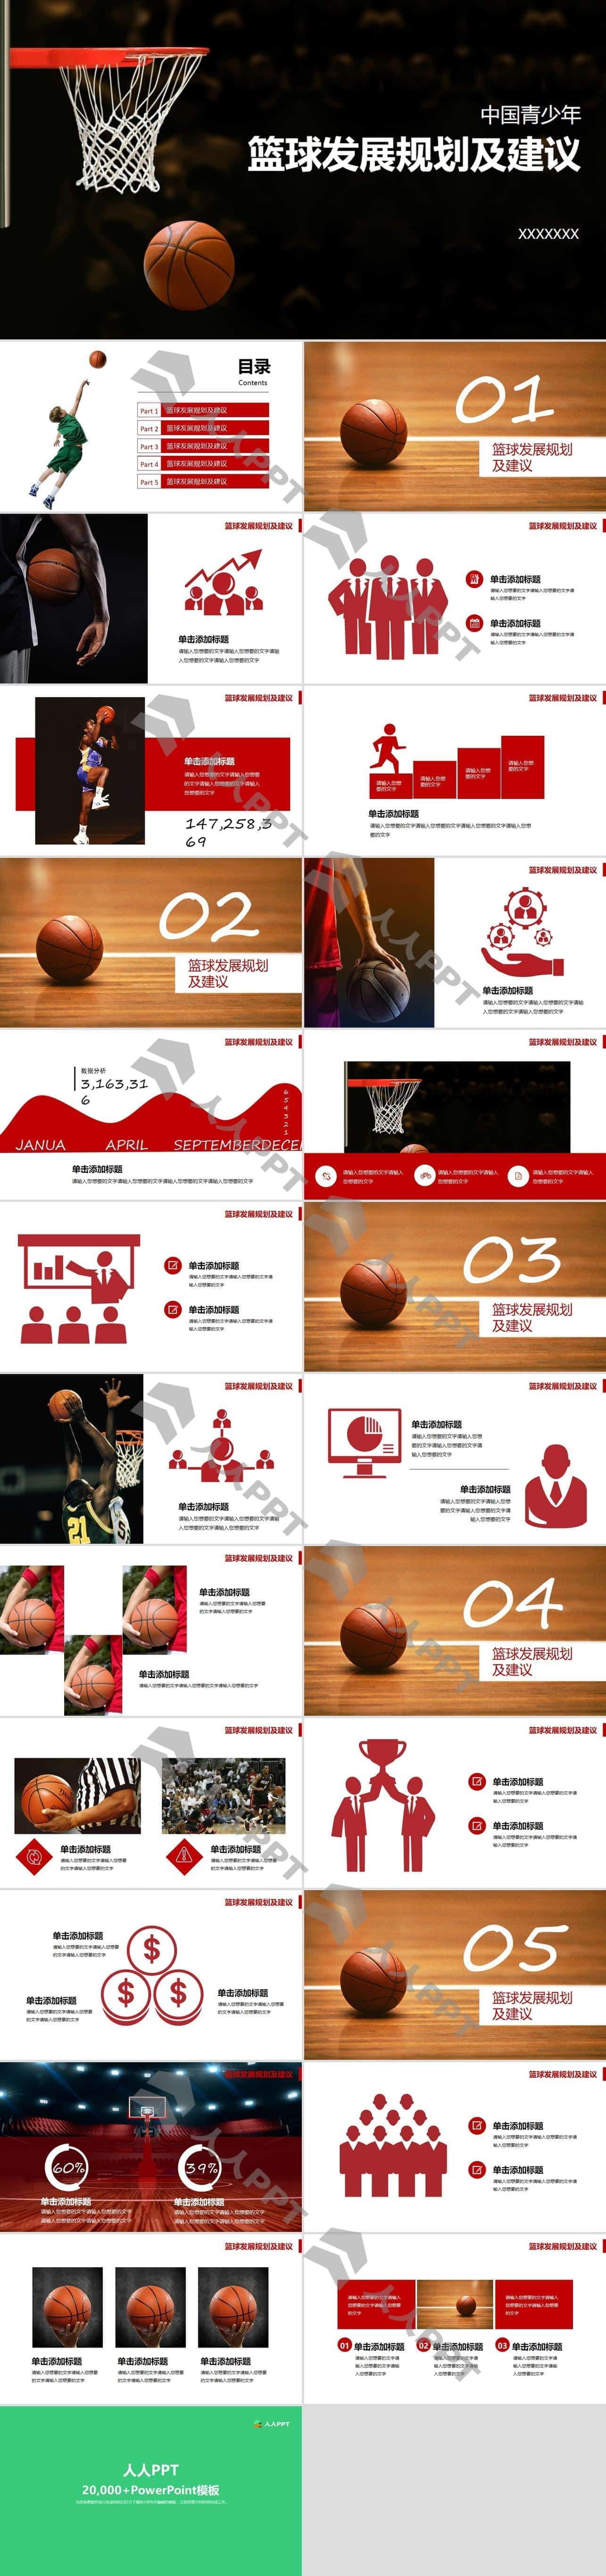 中国青少年篮球发展规划及建议红黑配色动感PPT模板长图